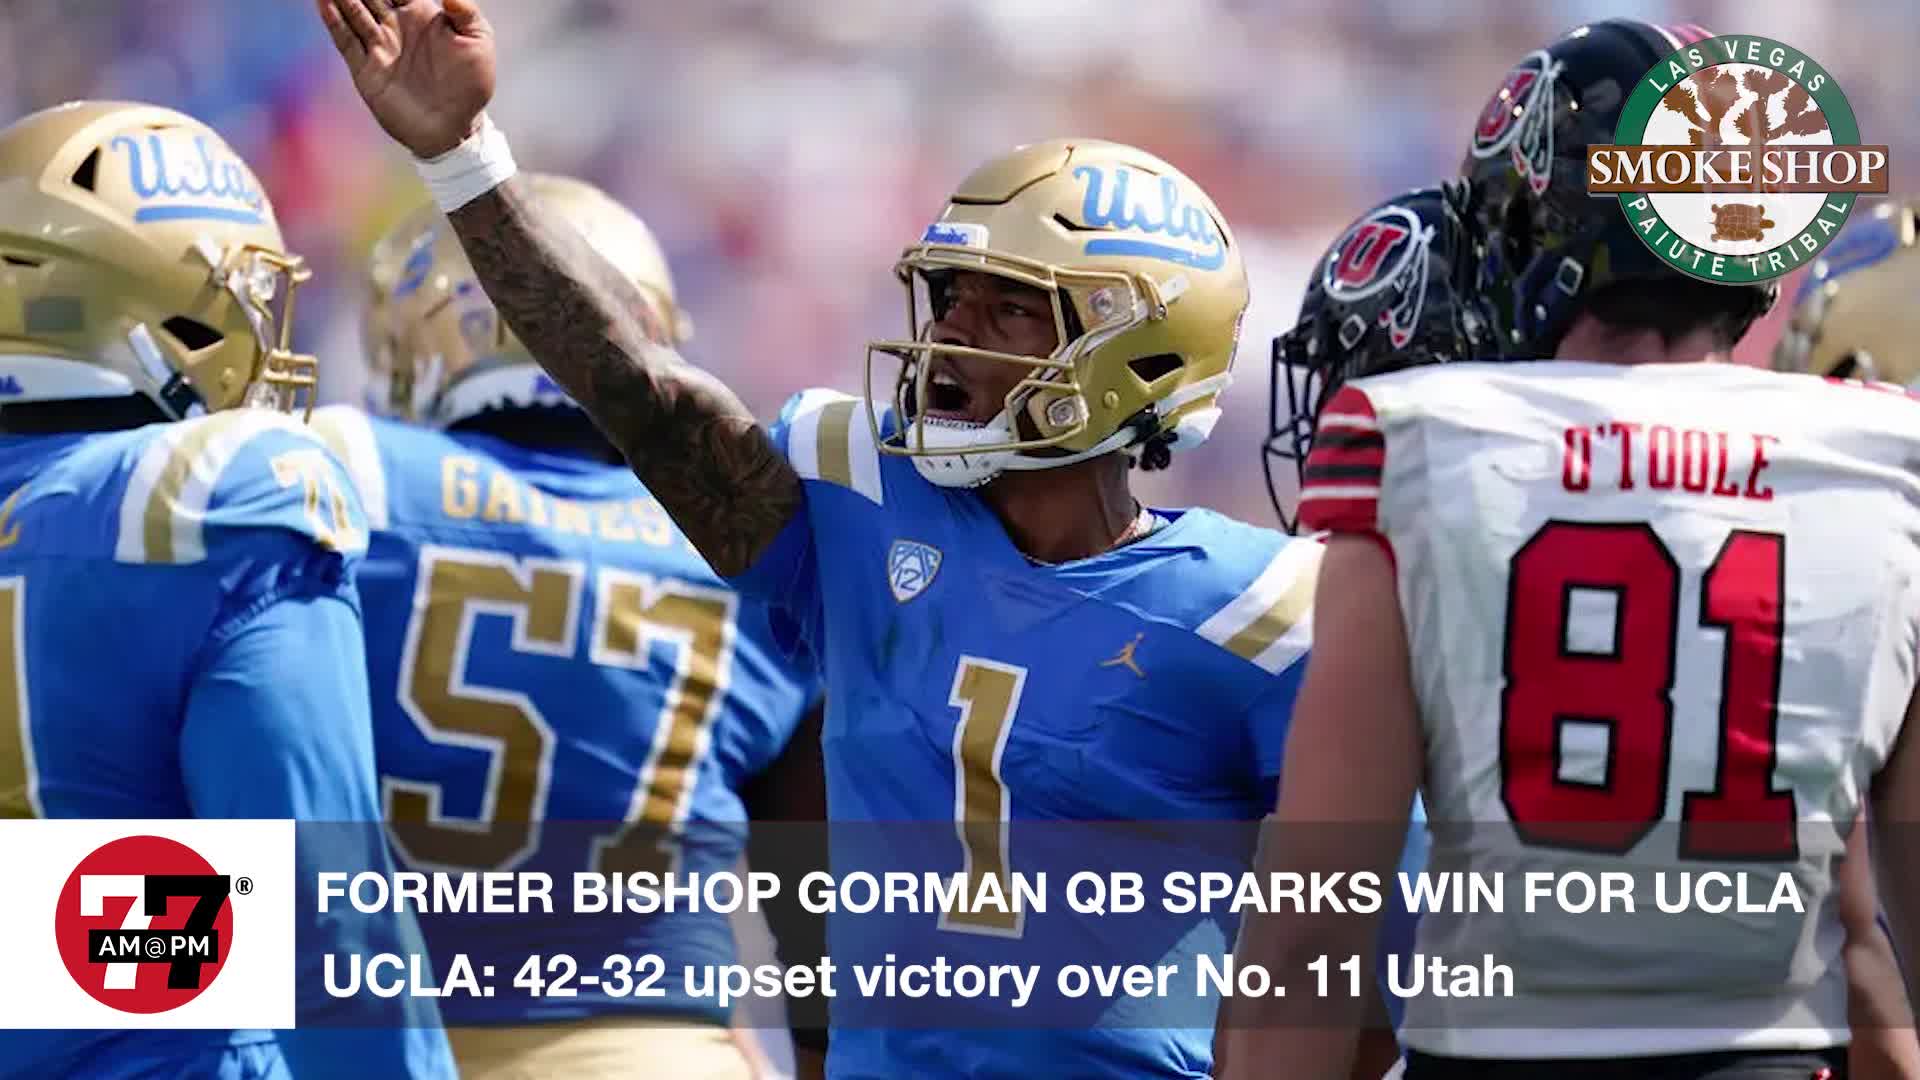 Former Bishop Gorman QB sparks win for UCLA